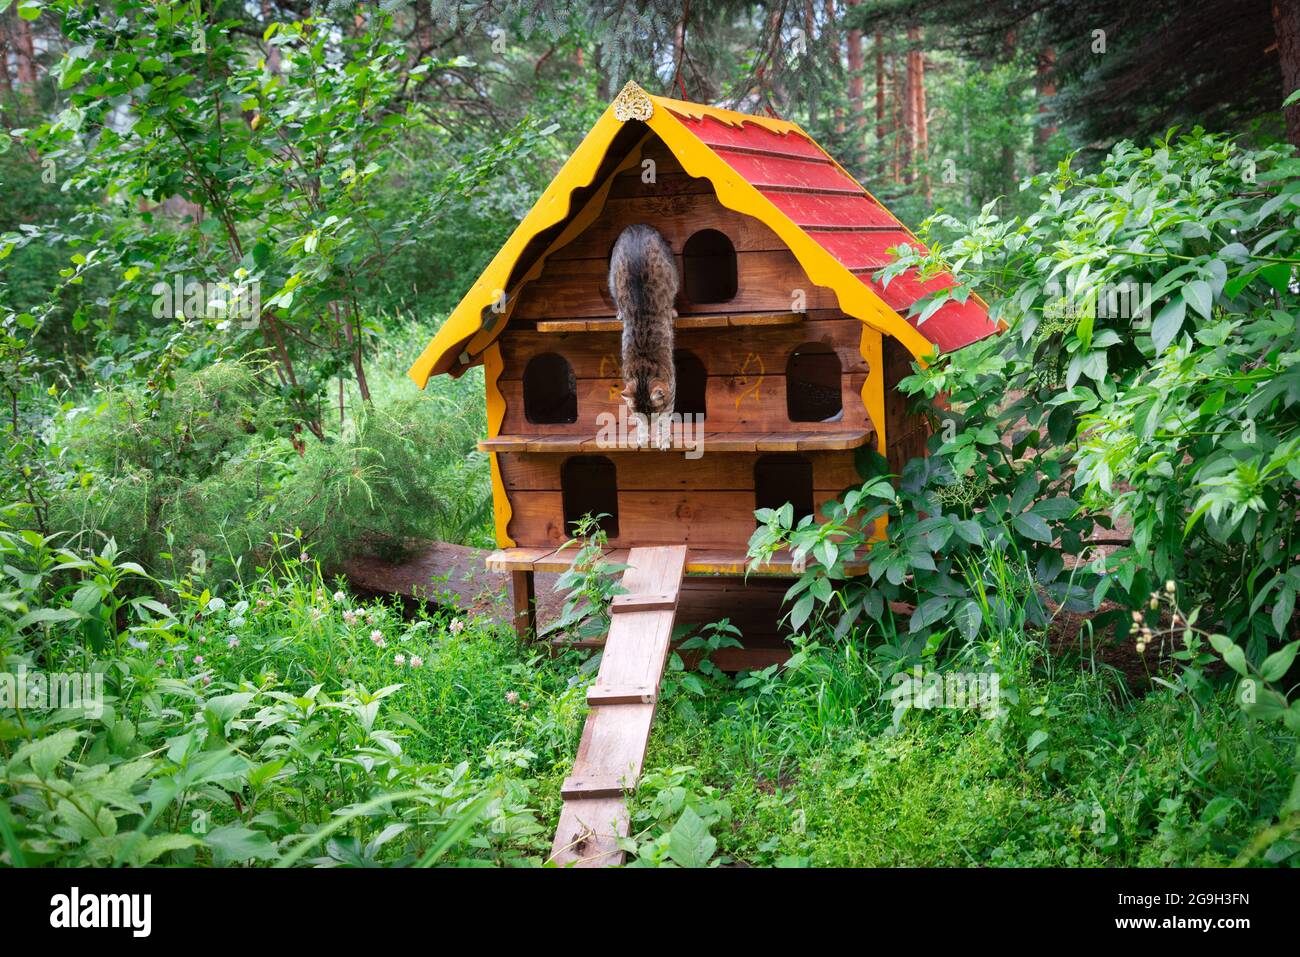 una casa di legno per i gatti senza casa si trova nel parco tra gli alberi Foto Stock